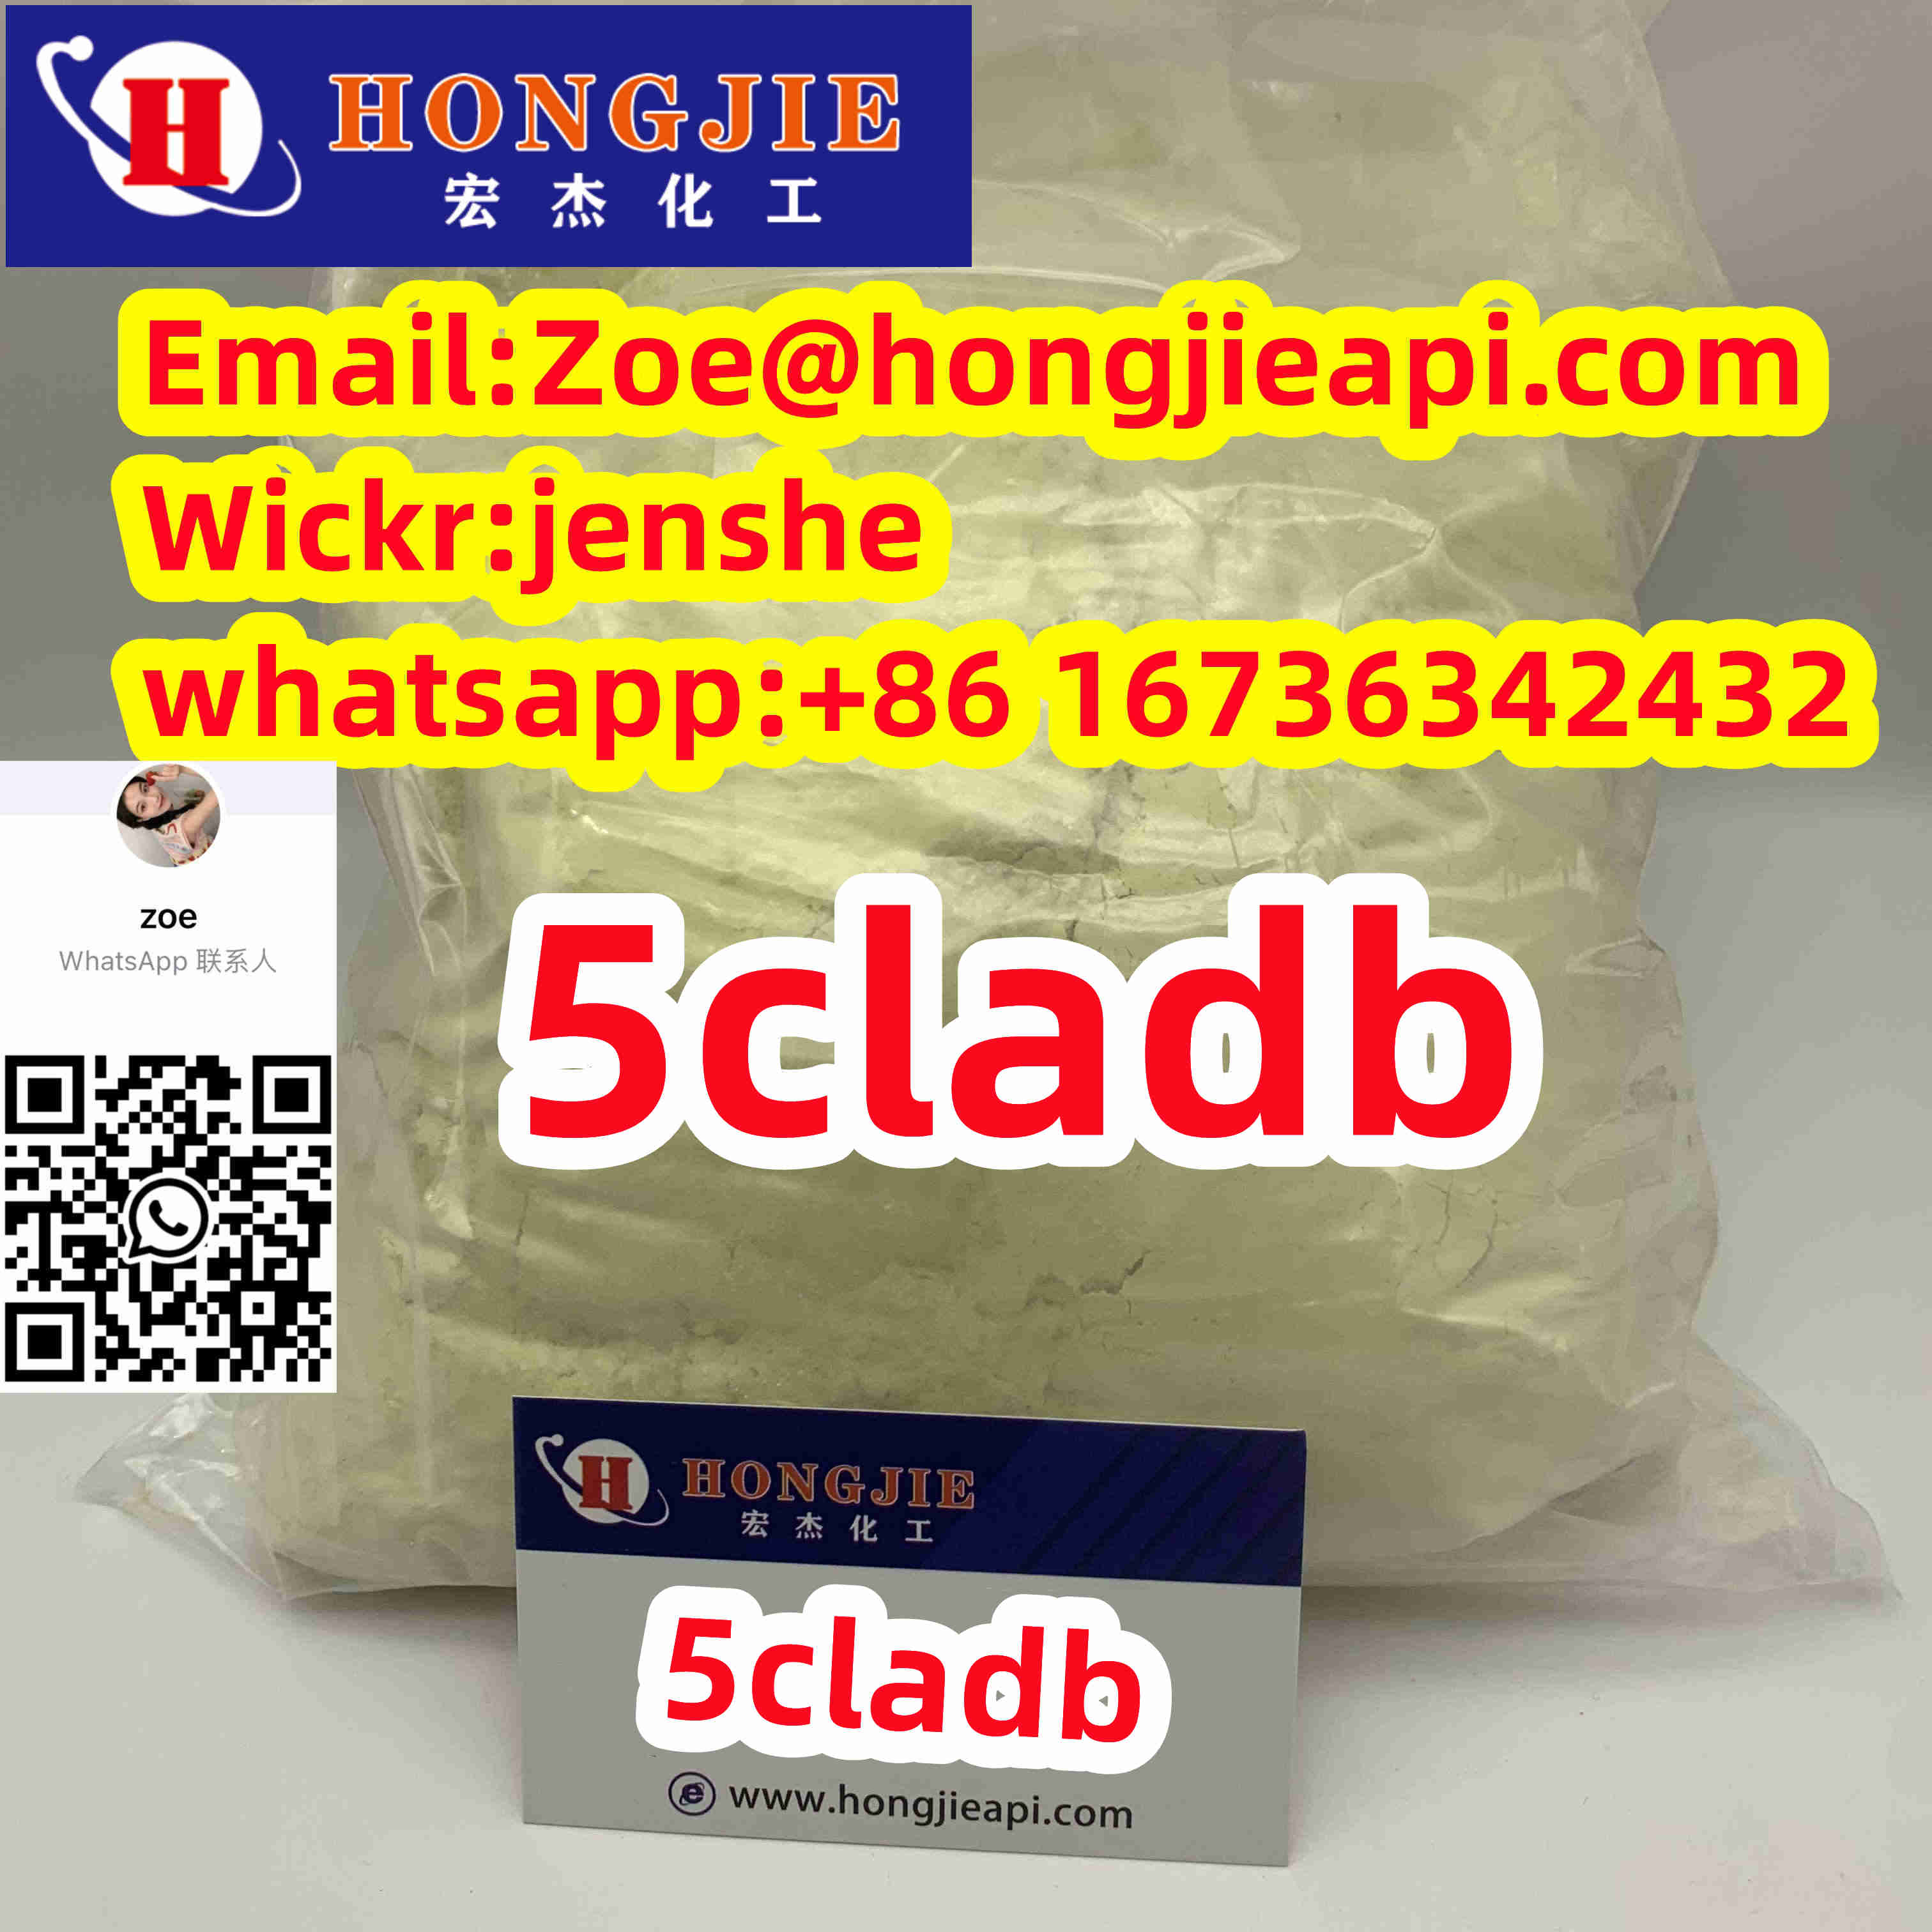 5cl-adb-a  adbb powder 5fmdmb2201 cannabinoids yellow Powder